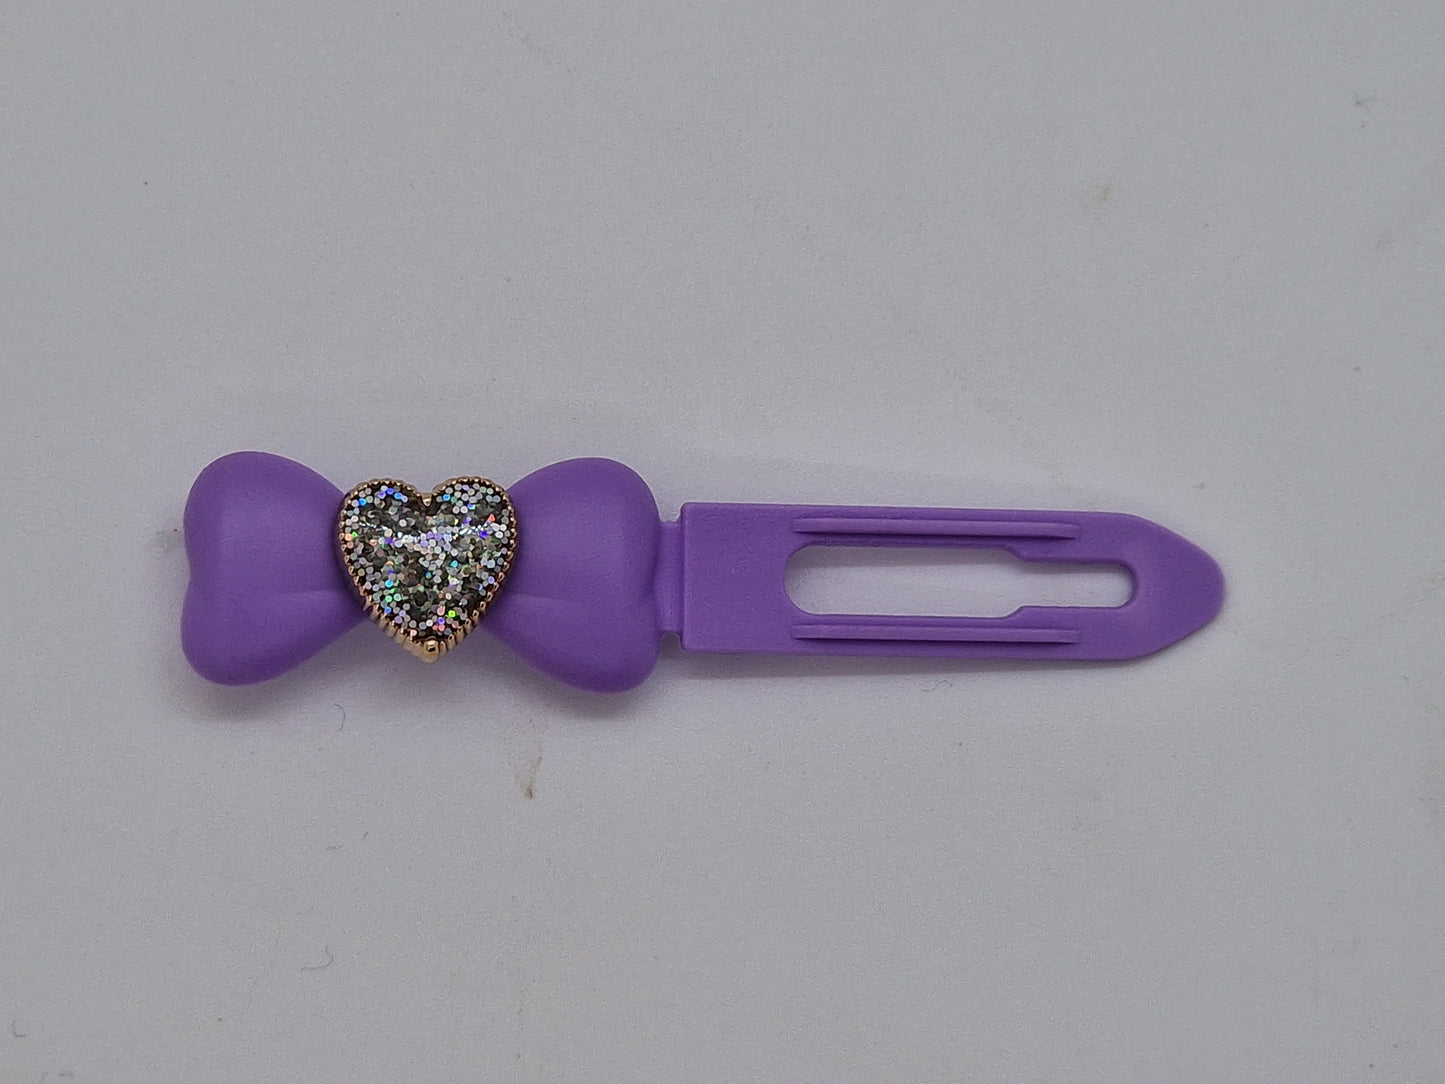 Herzspange mit glitzernden Diamanten, 3,5 cm, neuartiger Clip